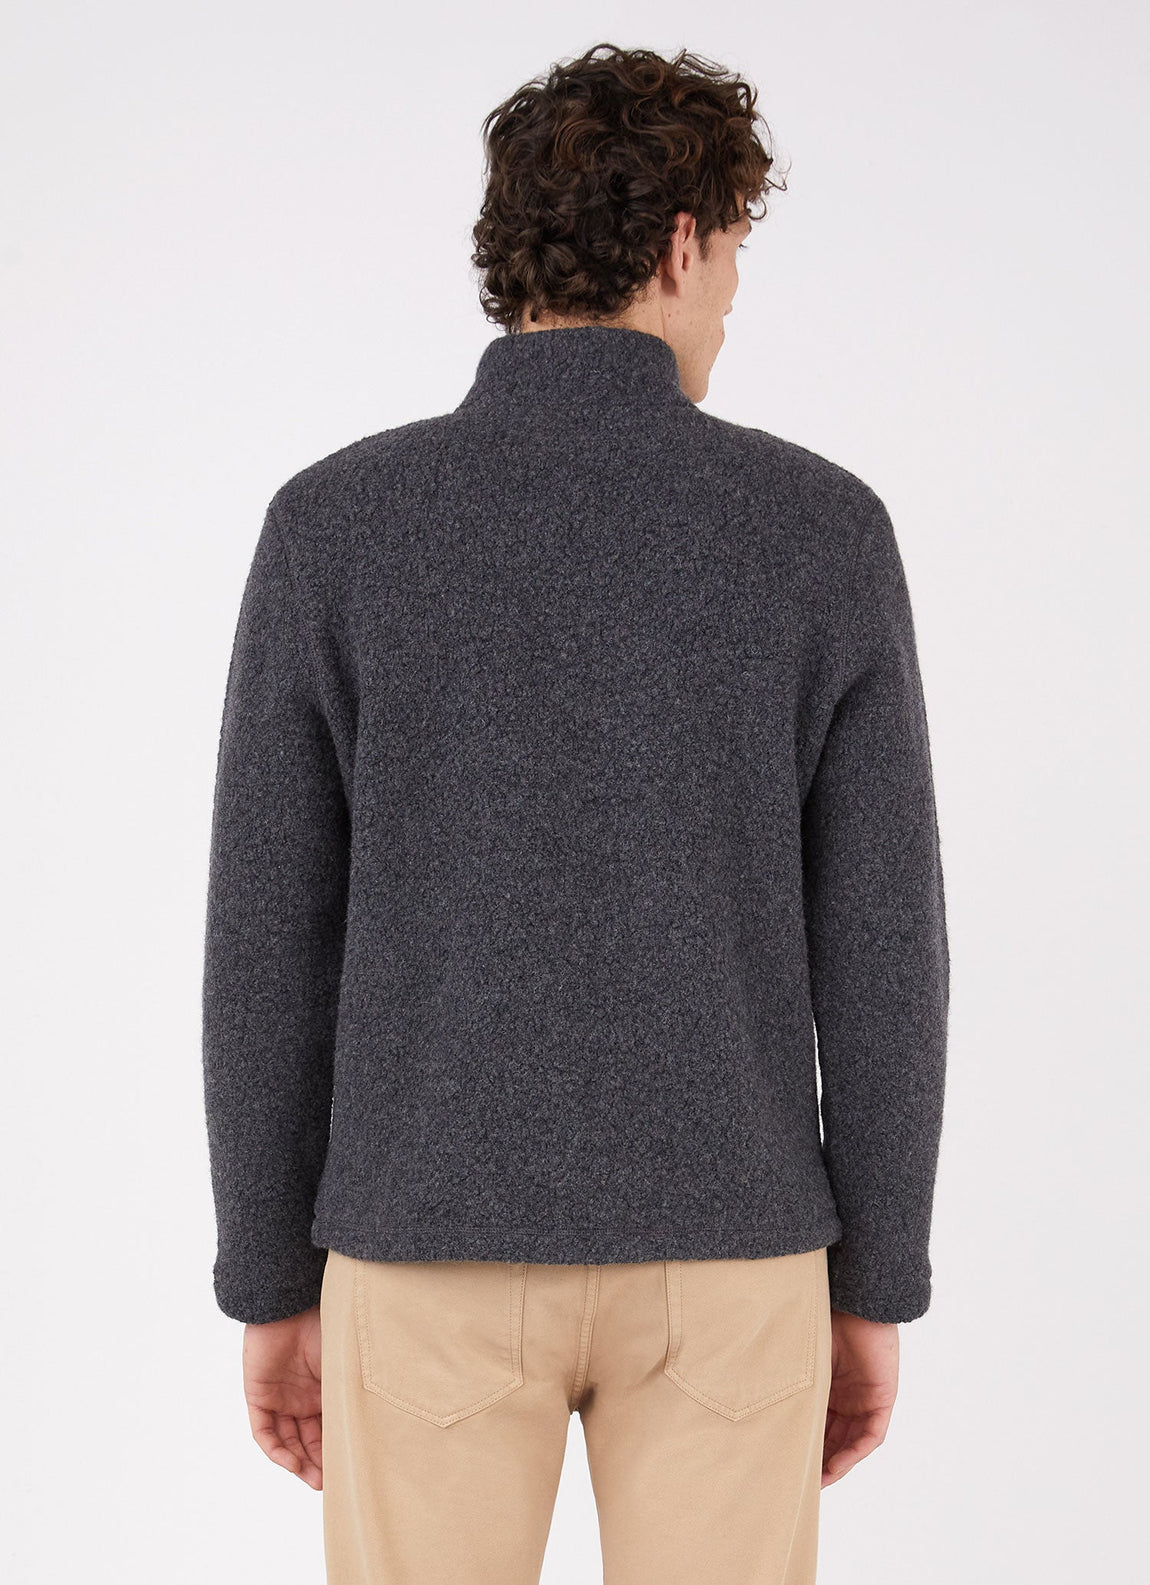 Men's Wool Fleece Zip Neck in Charcoal Melange